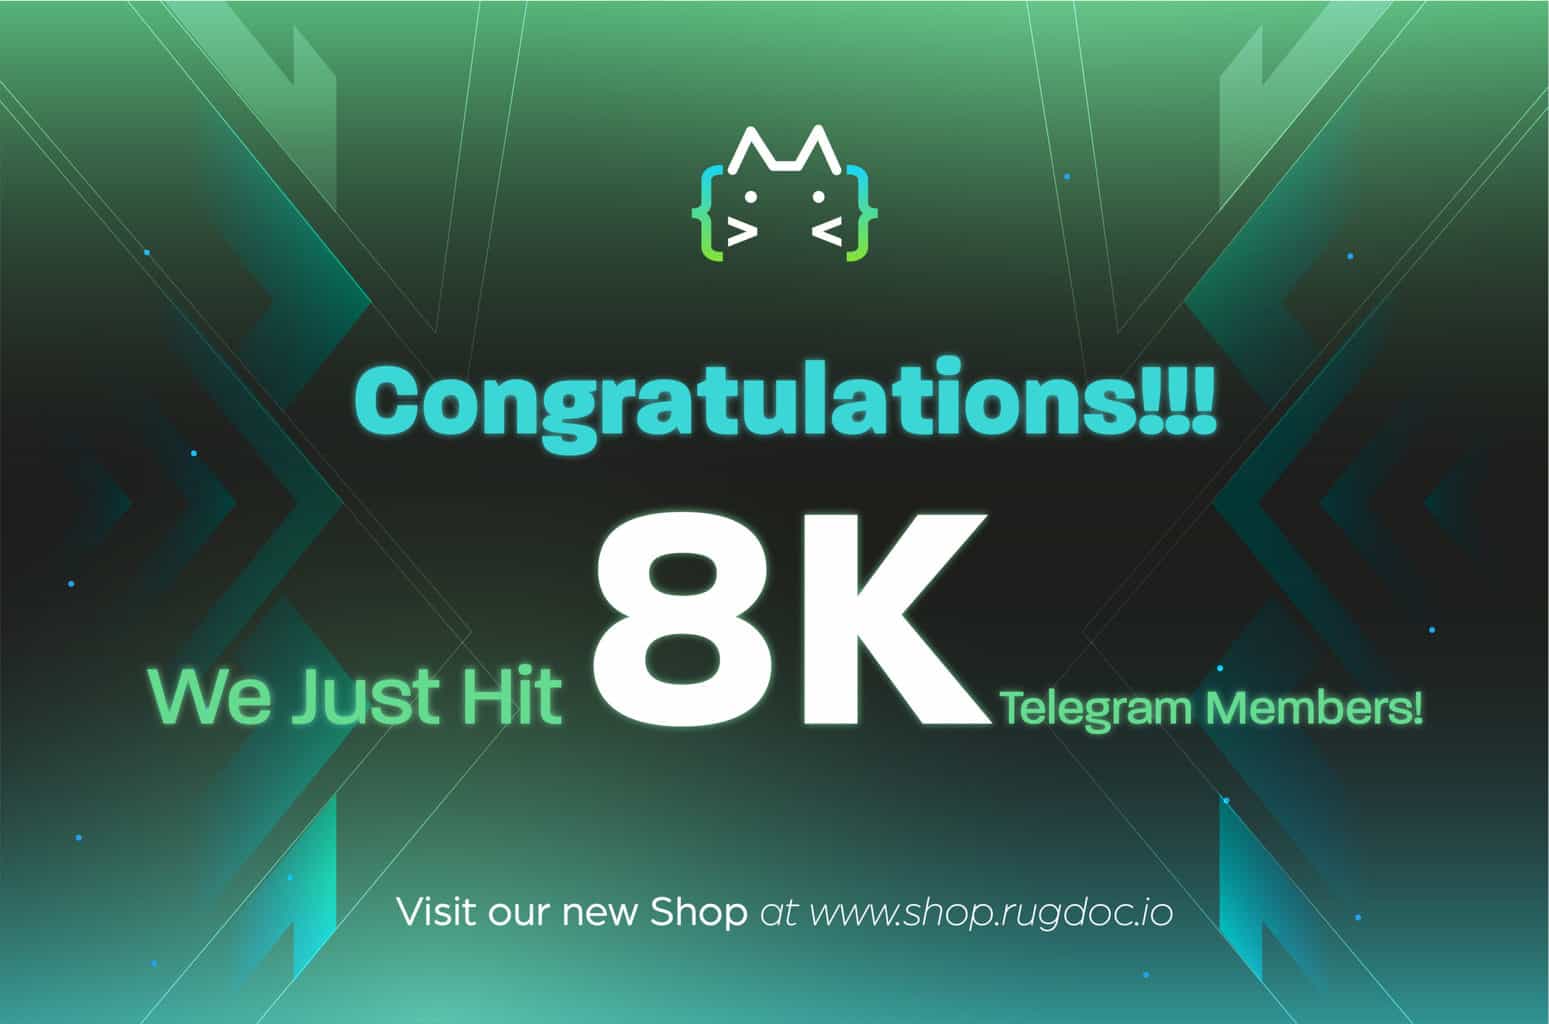 Hit 8K telegram members